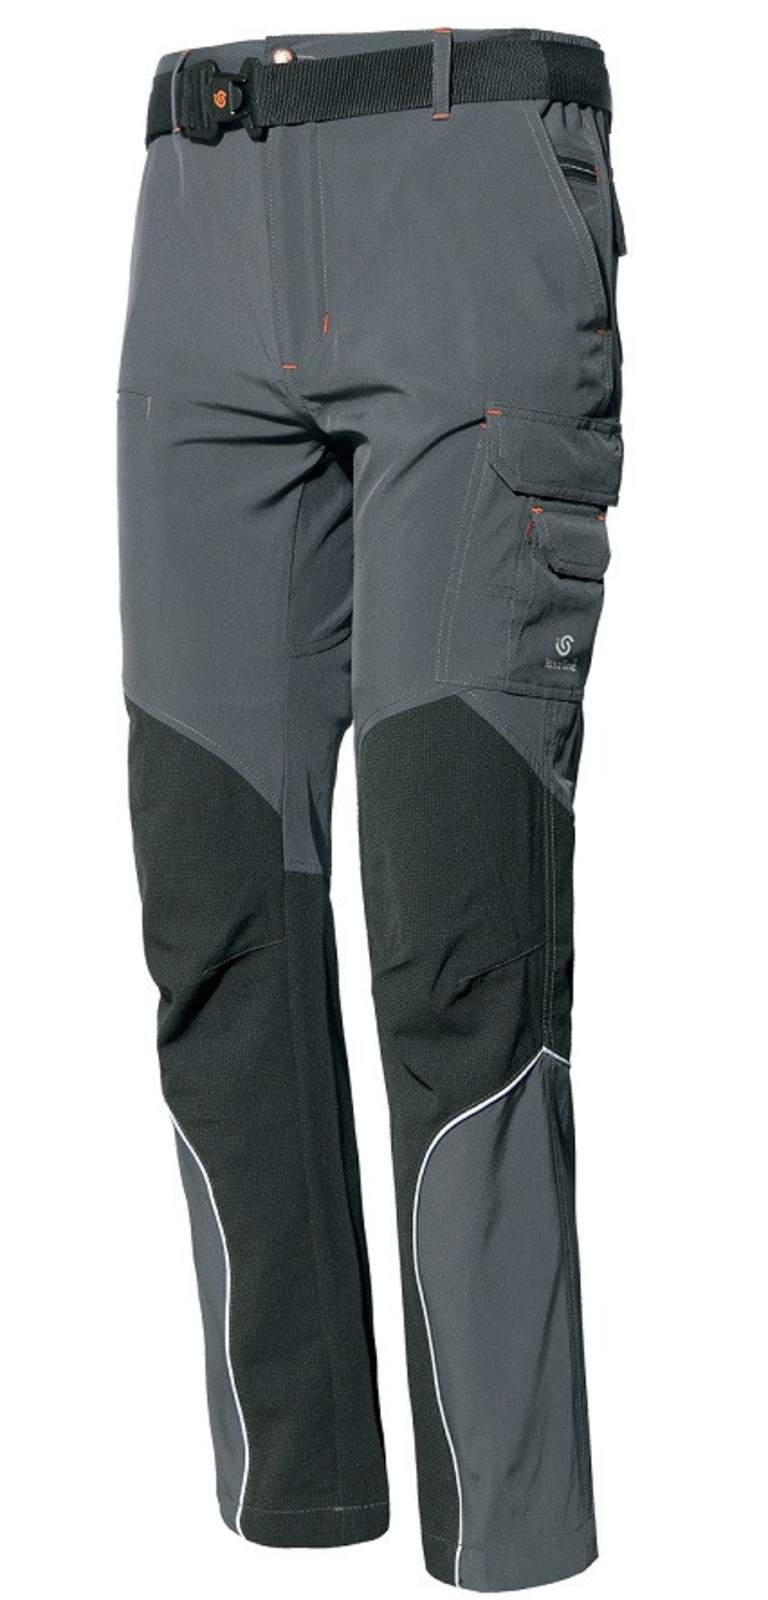 Tenké strečové softshellové nohavice ISSA Extreme Light - veľkosť: M, farba: sivá/čierna